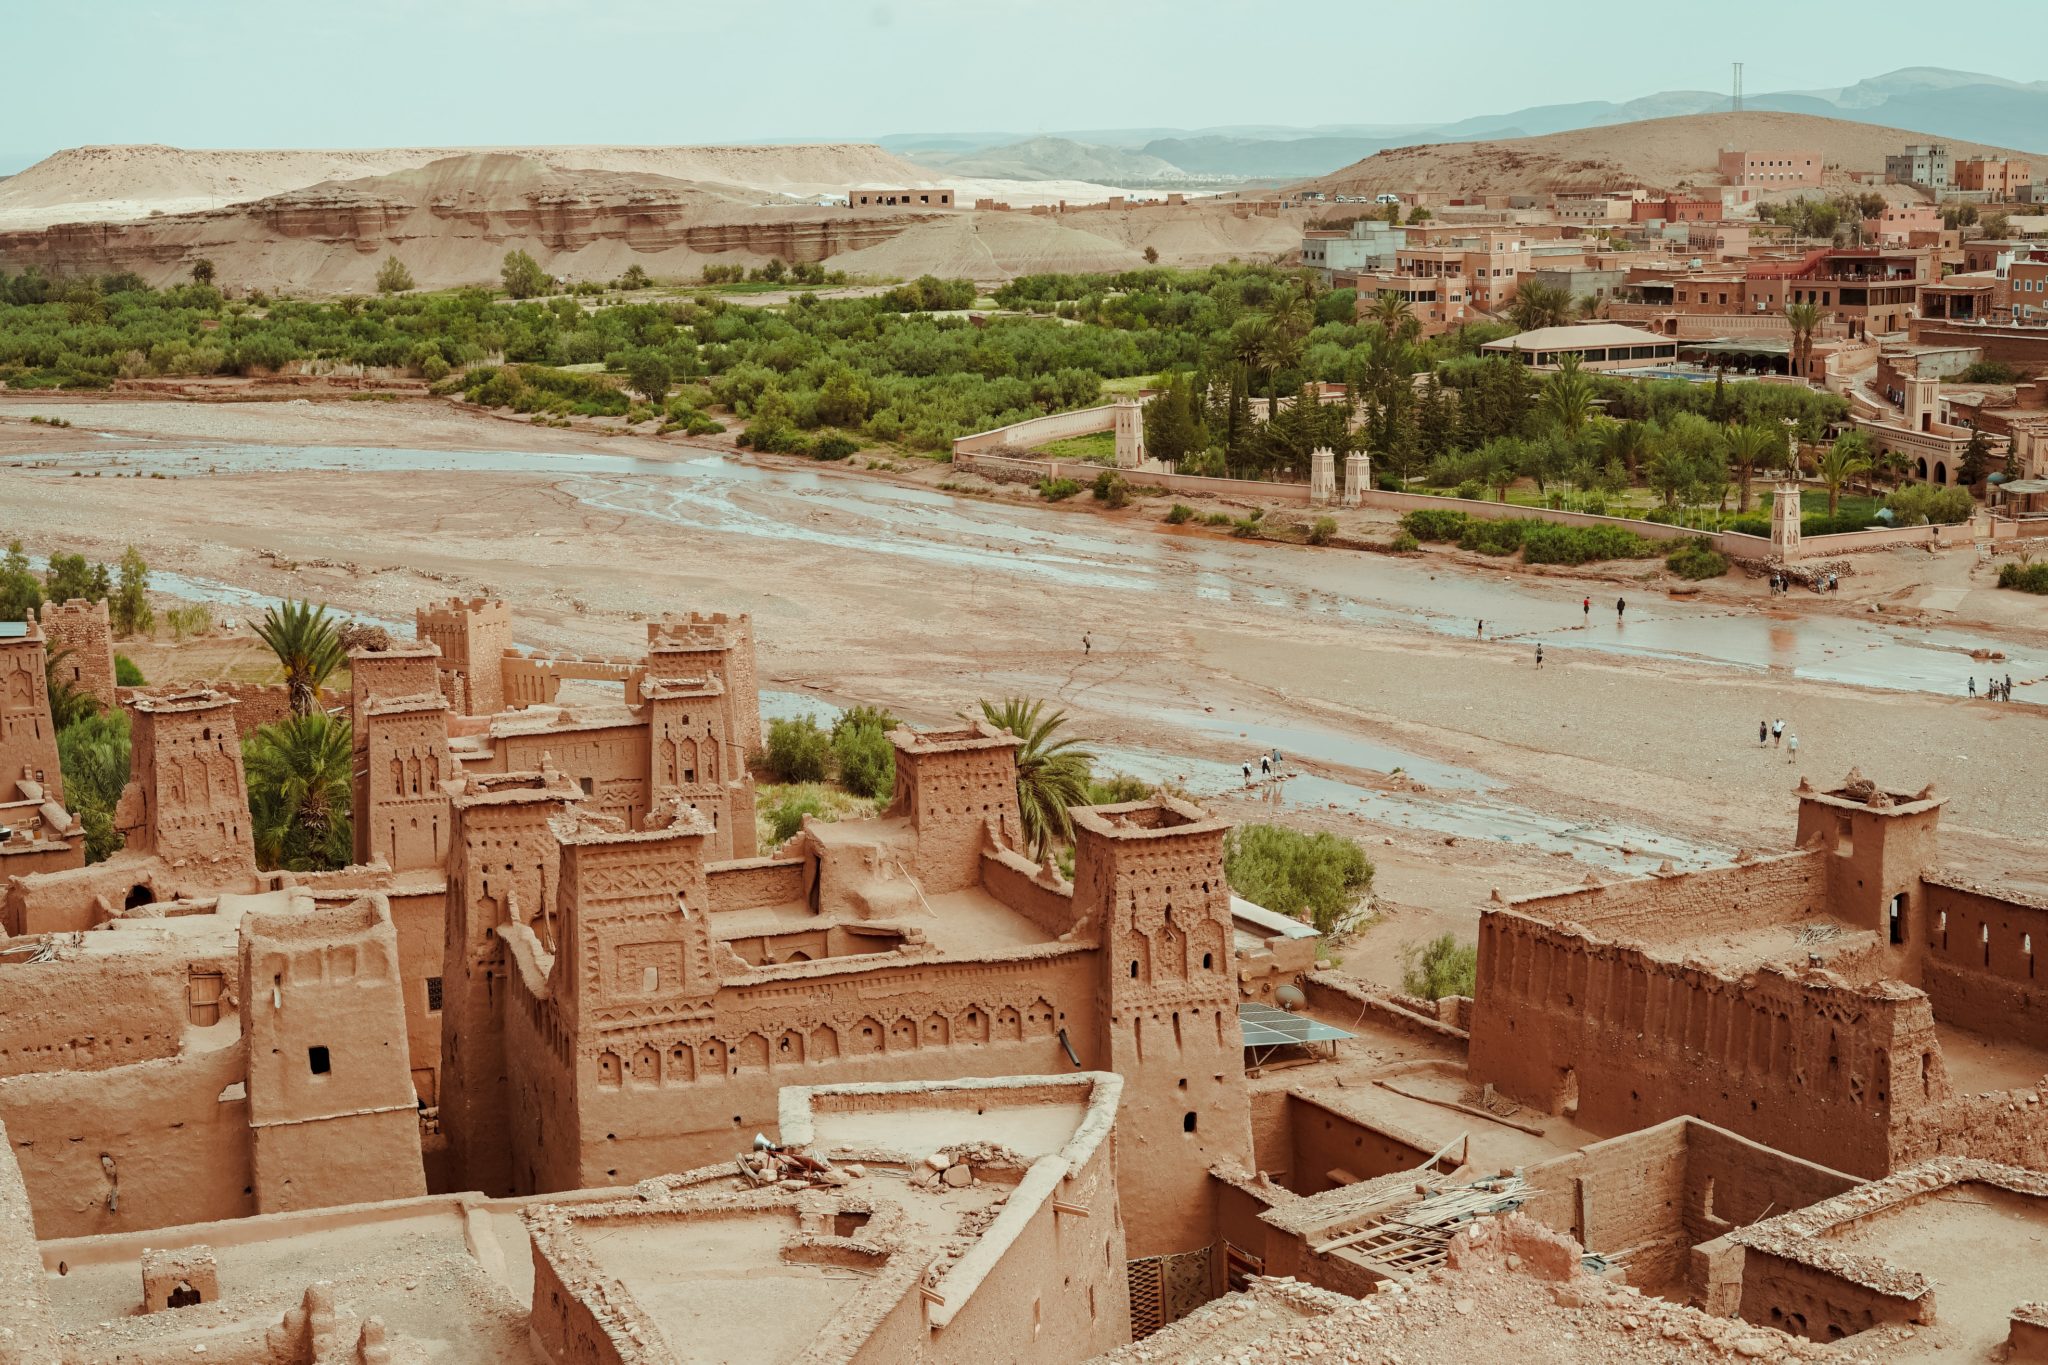 Widok z drona na ufortyfikowaną osadę w Maroko, kasby i ksary, budowle budowane z gliny i oaza